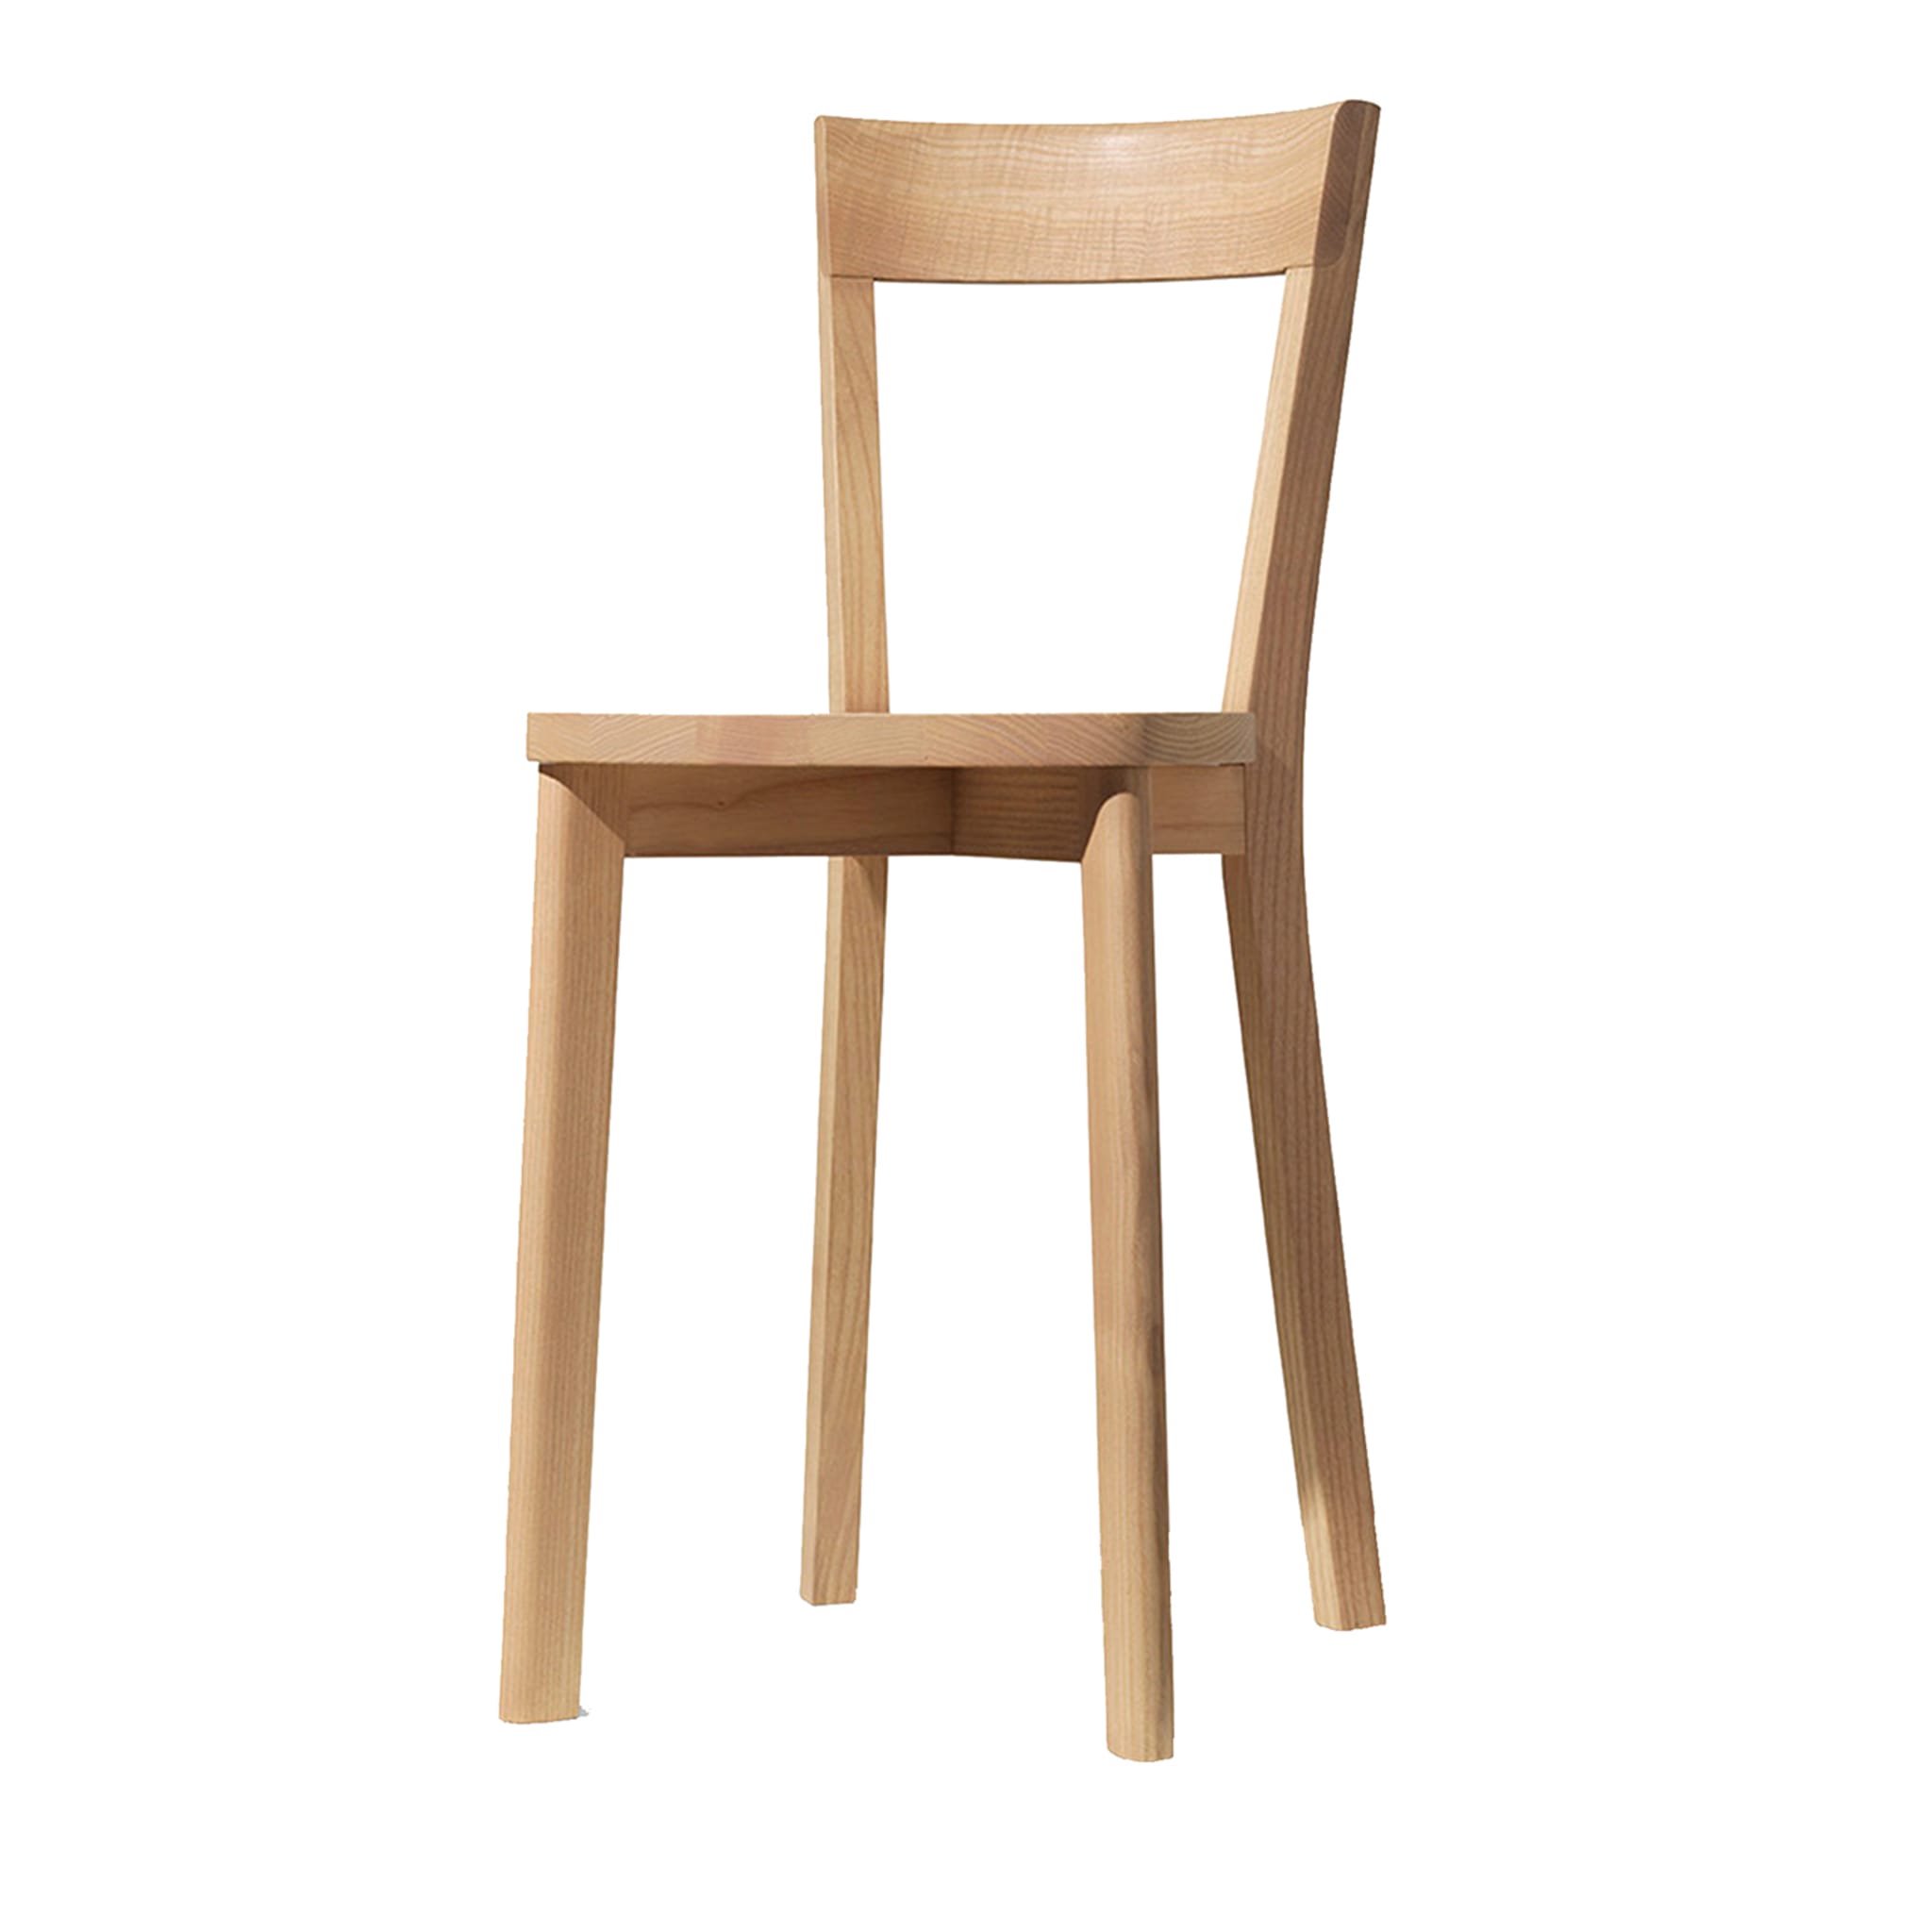 Mina Chair by Tommaso Caldera - Main view